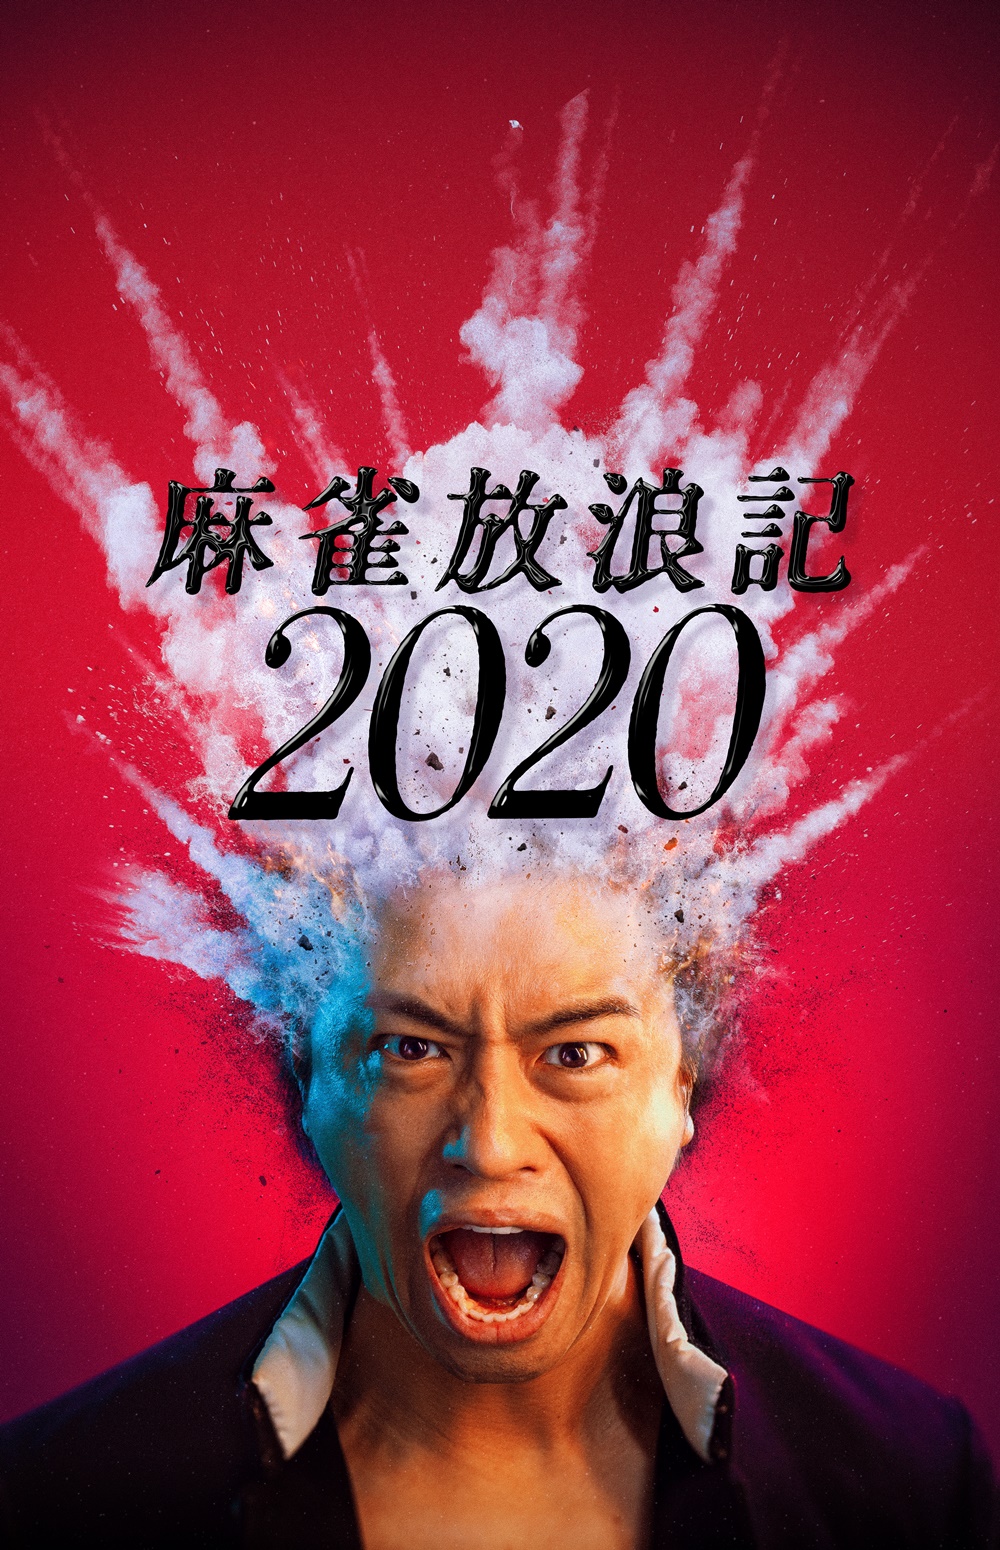 【画像】映画『麻雀放浪記2020』ポスタービジュアル